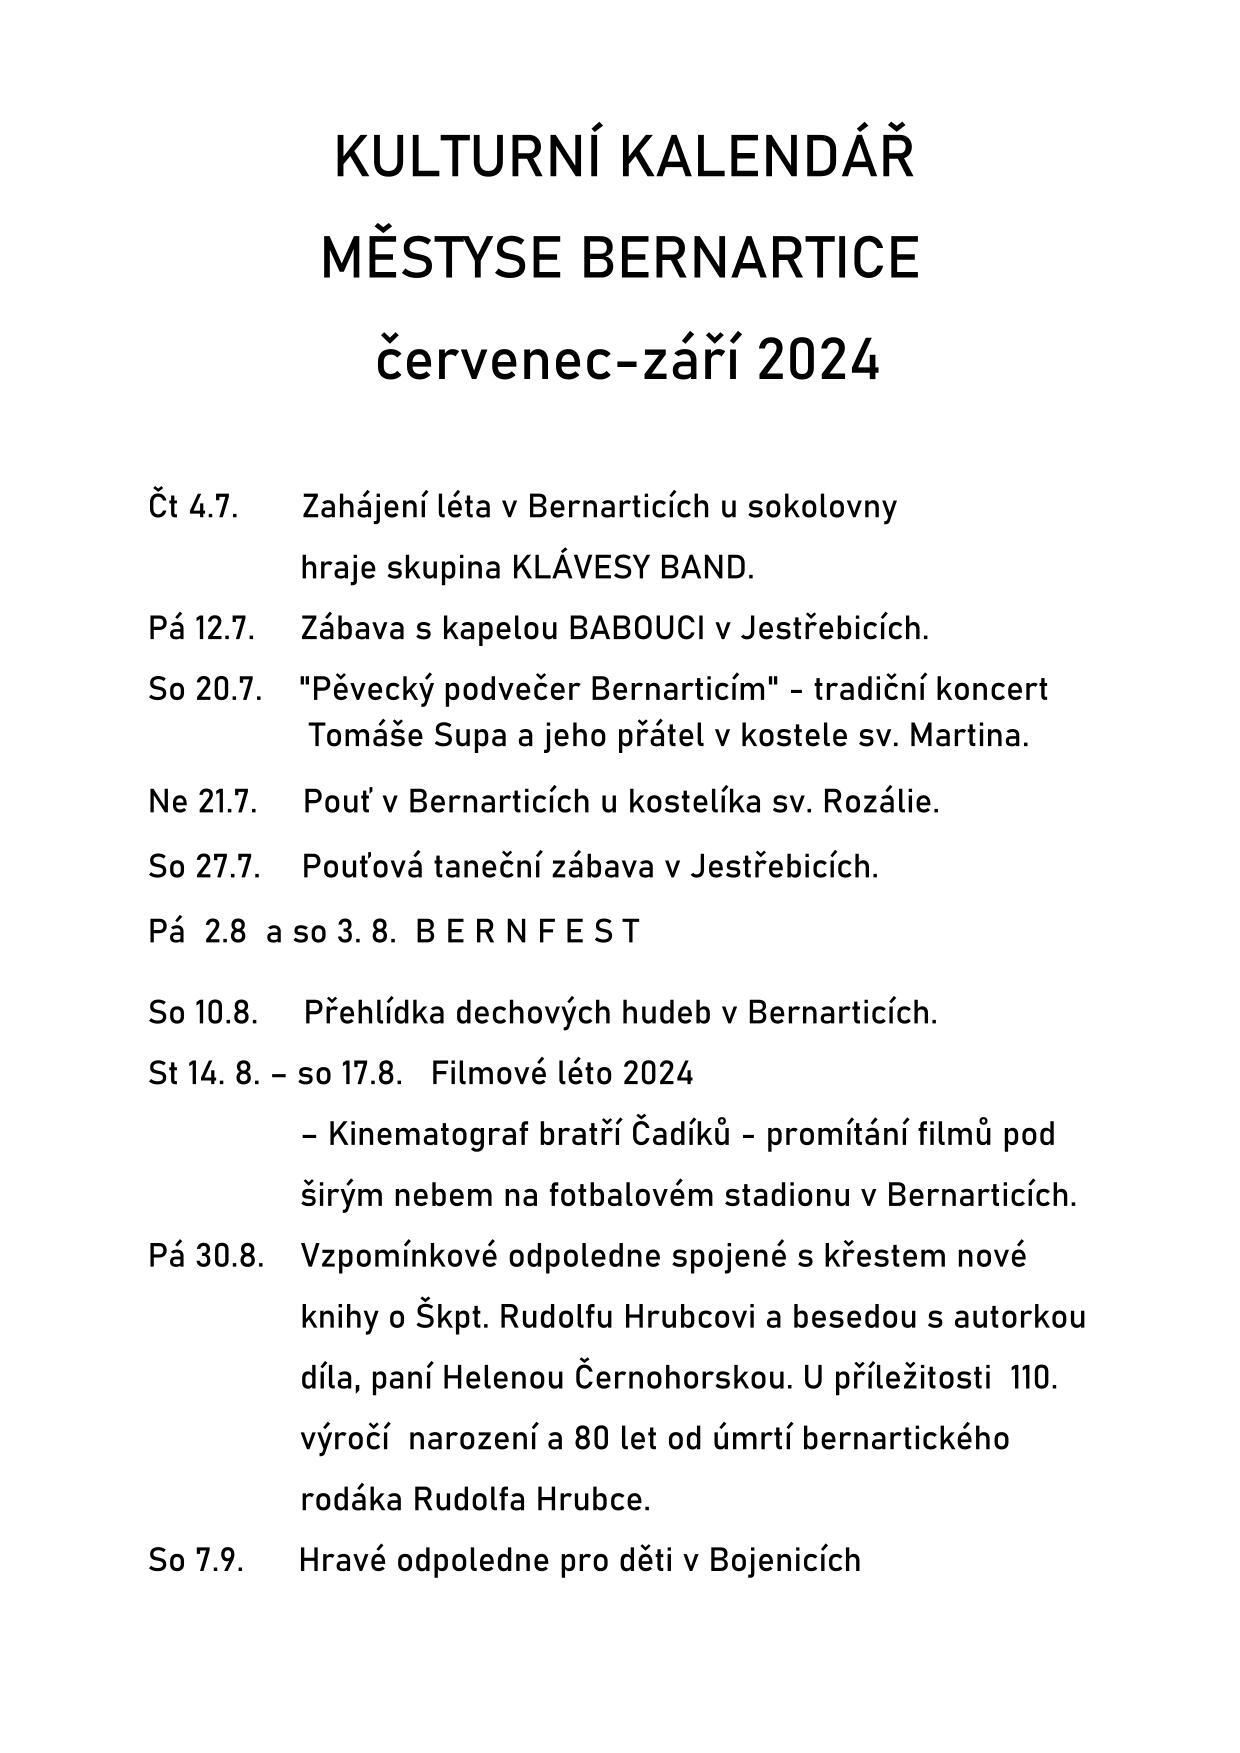 Kulturní kalendář městyse Bernartice "červenec-září 2024"